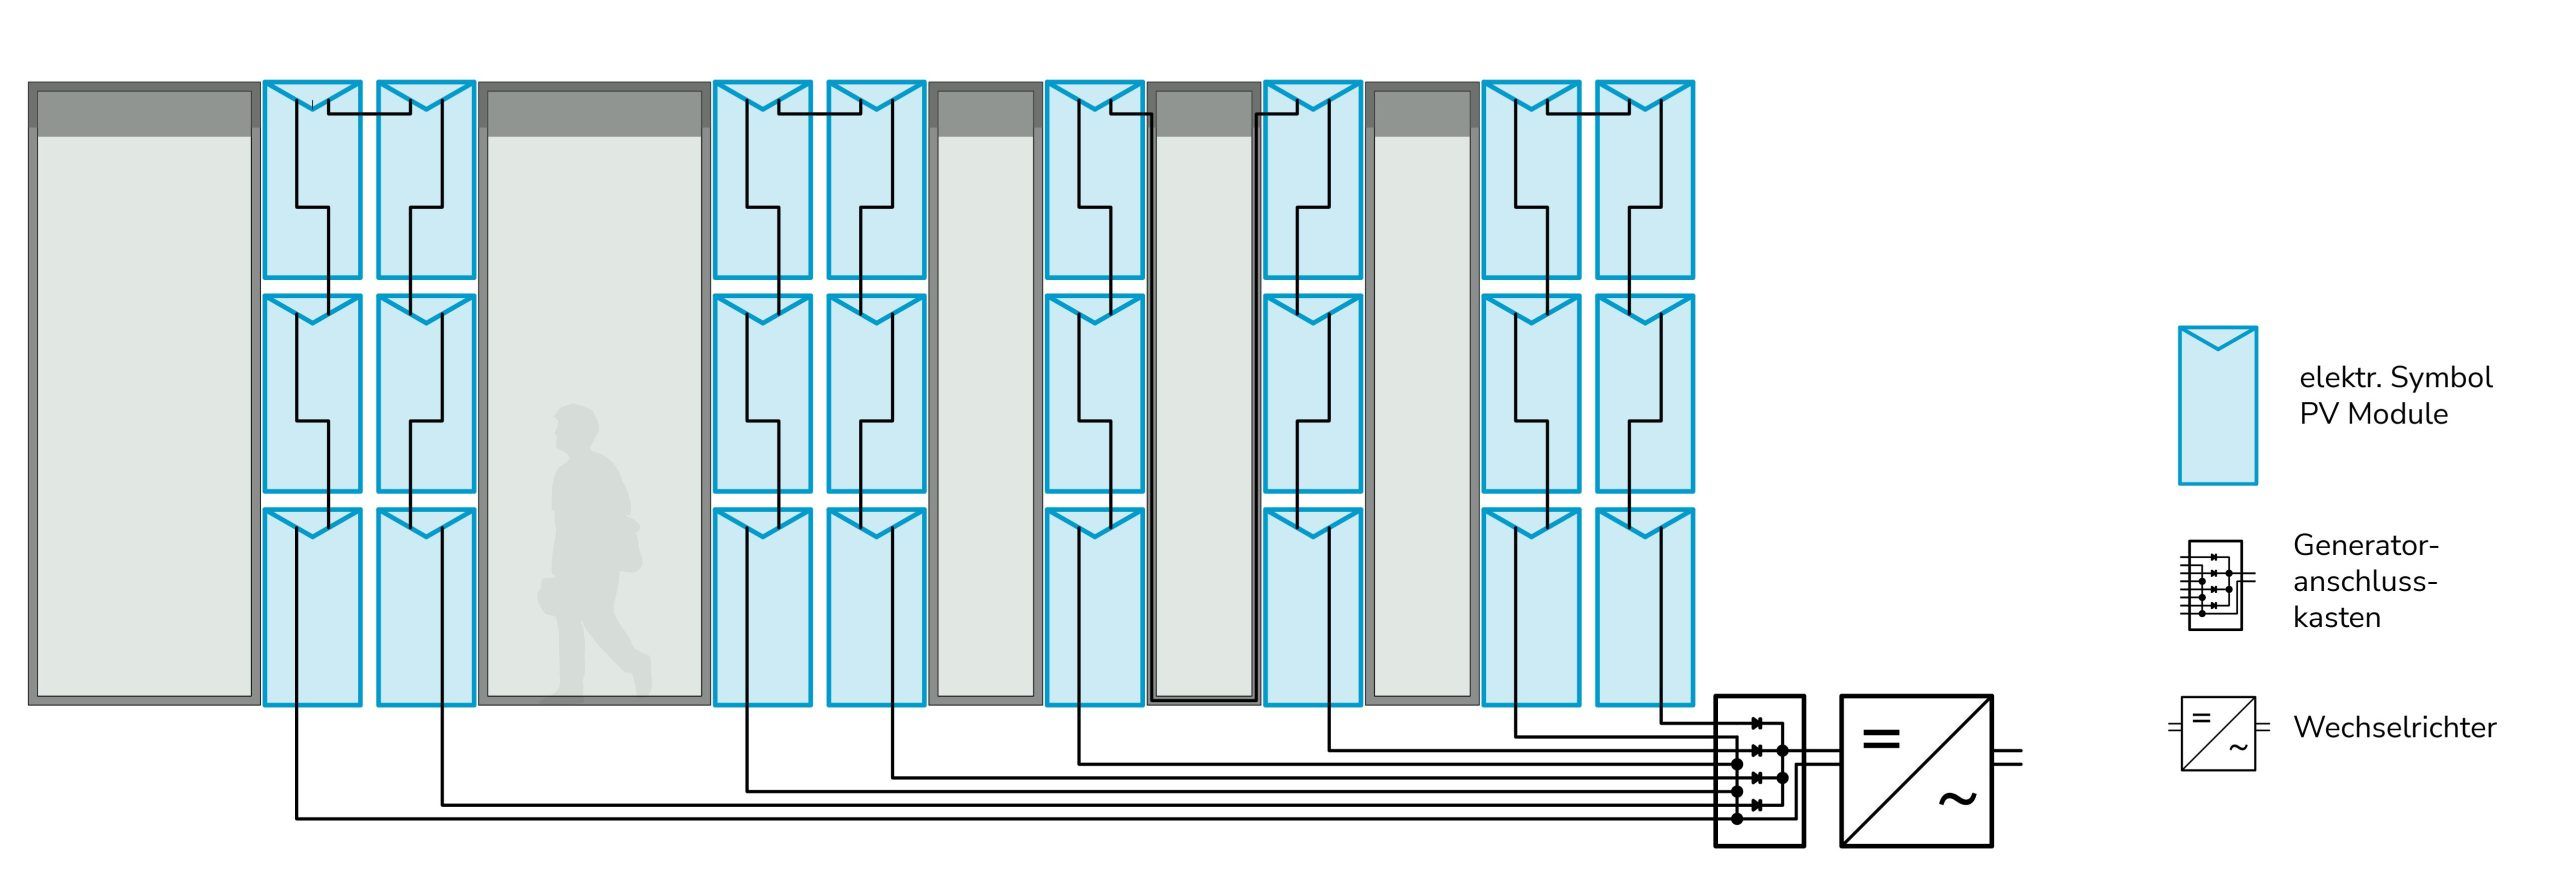 Die Abbildung zeigt schematisch die Verschaltung von PV-Modulen zu Strängen und deren Zusammenfassung in einem Generatoranschluss-kasten. 